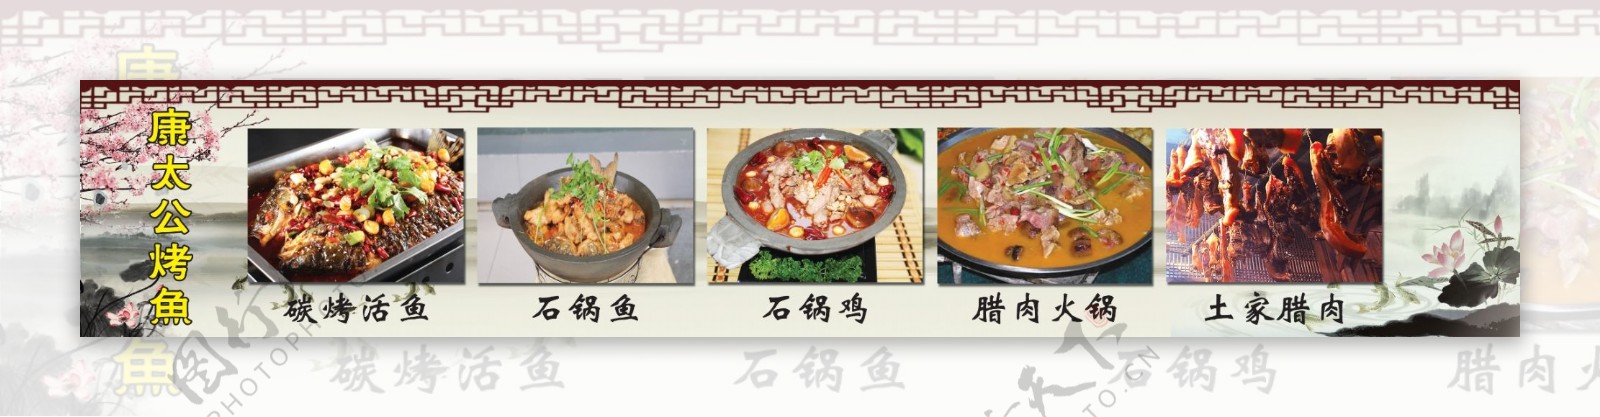 康太公石锅鱼图片